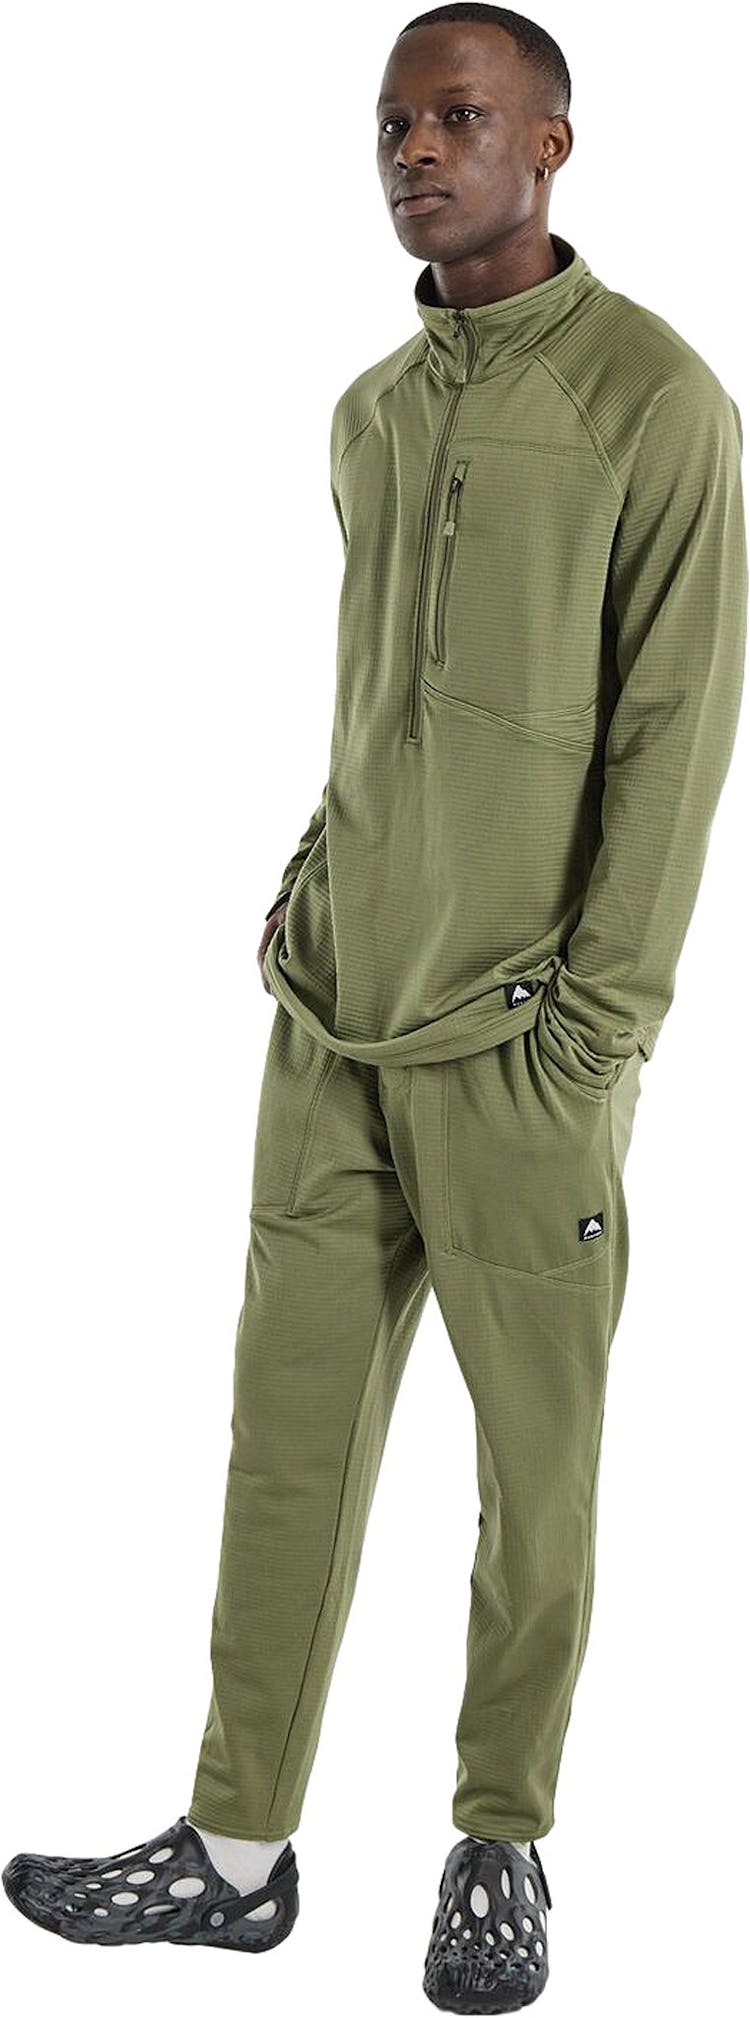 Product gallery image number 3 for product Stockrun Grid Half-Zip Fleece Sweatshirt - Men's